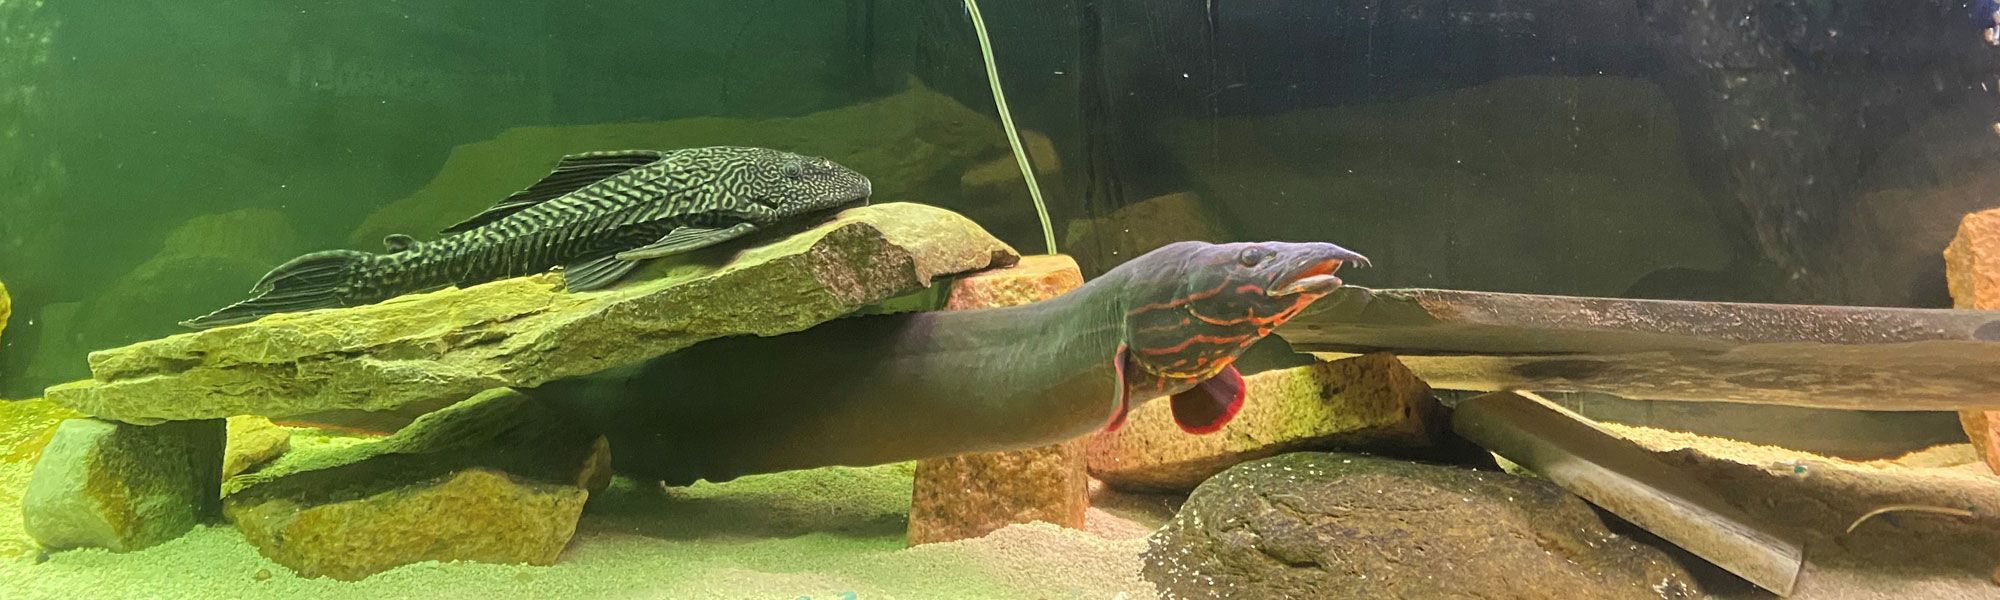 Diggie, Mascot of Digital Eel, swimming in his tank